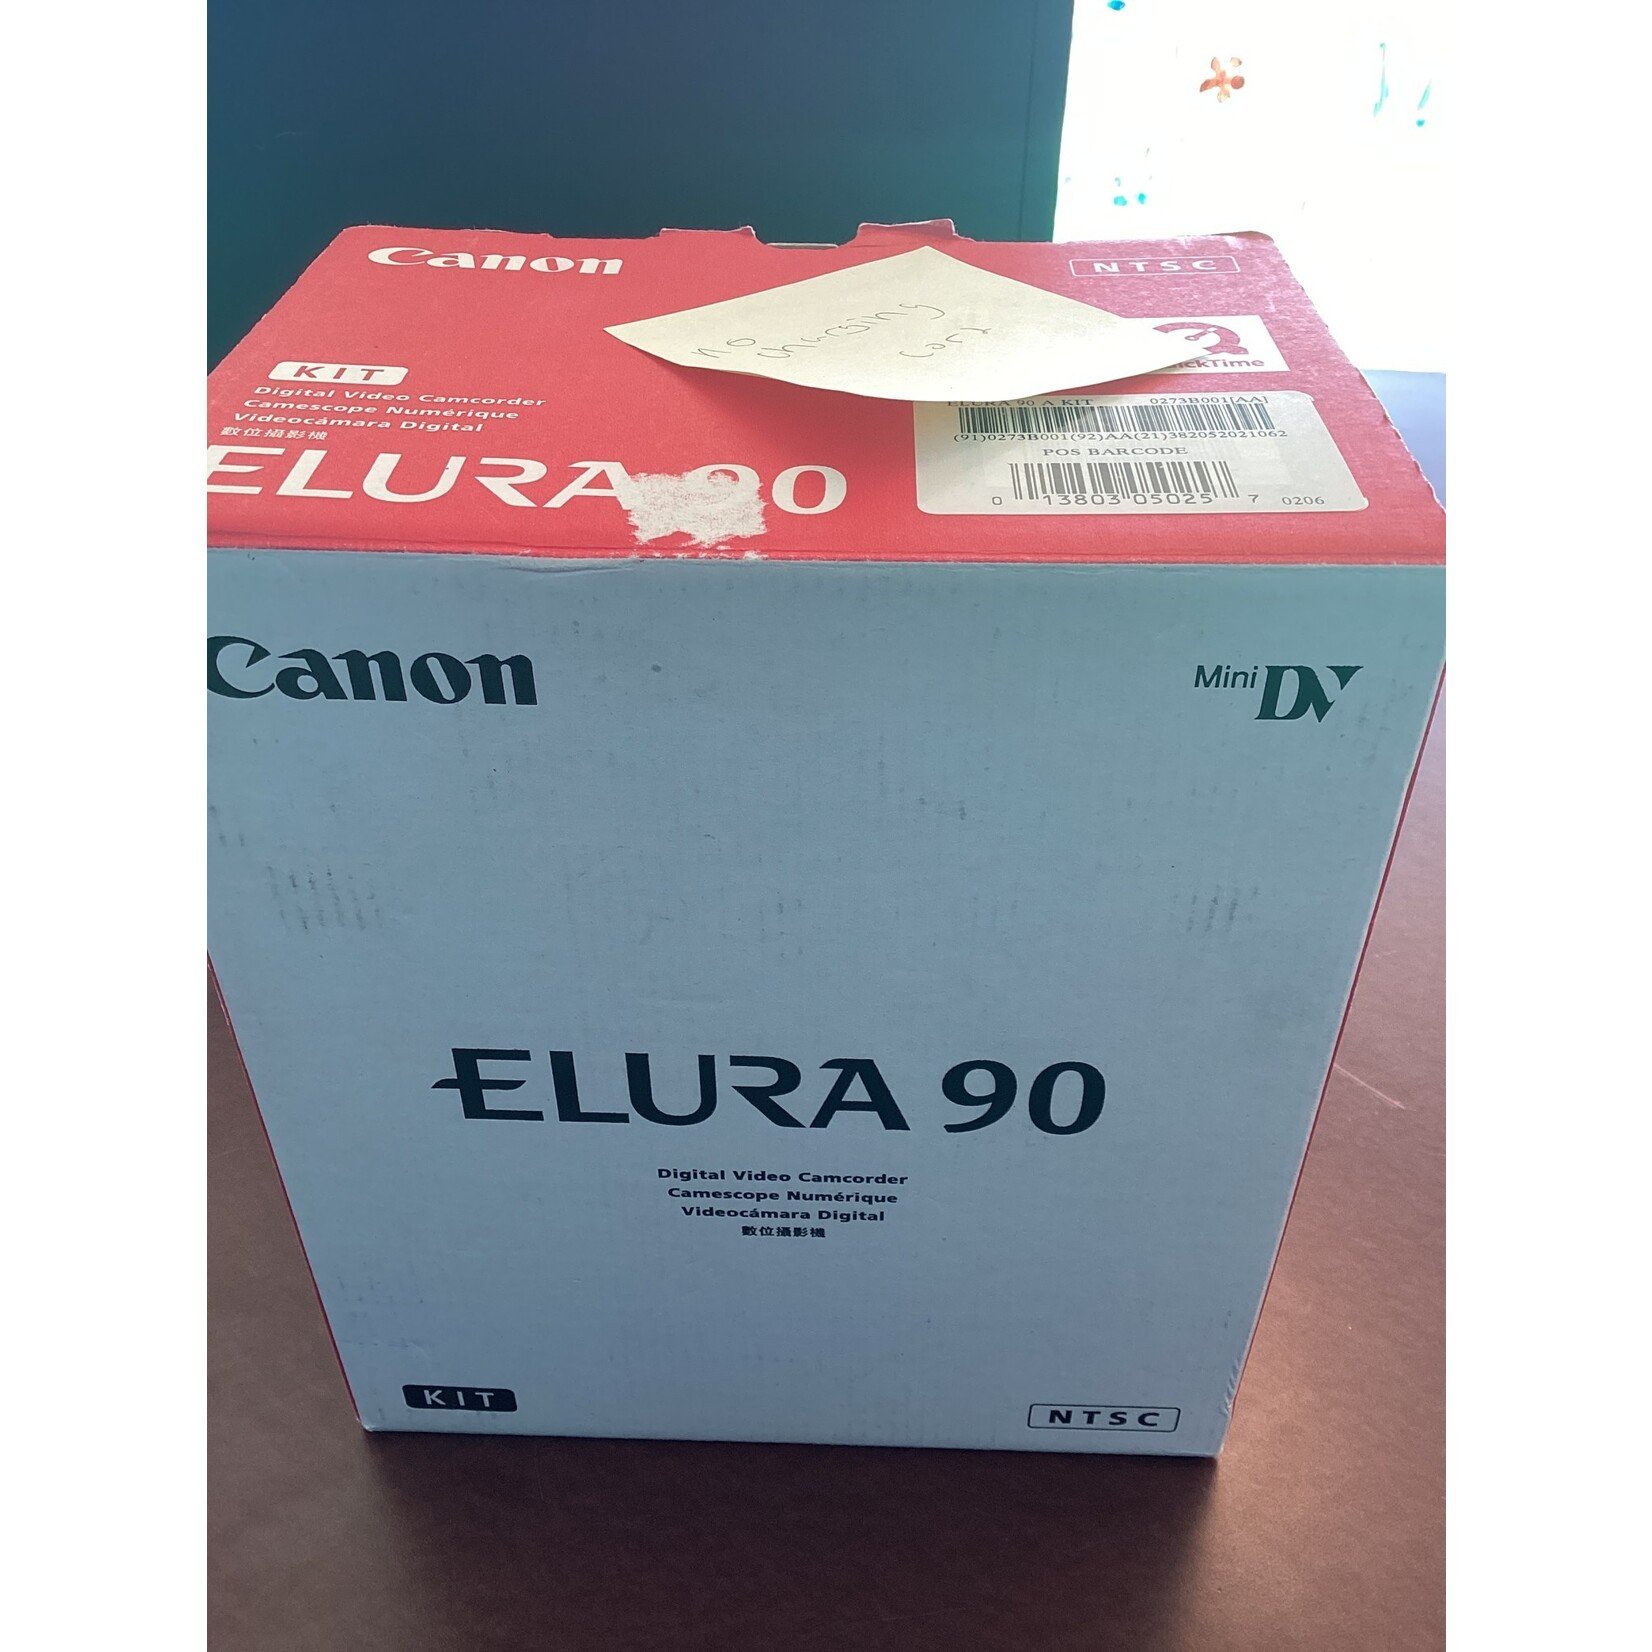 Canon Elura 90 (no charging cord)